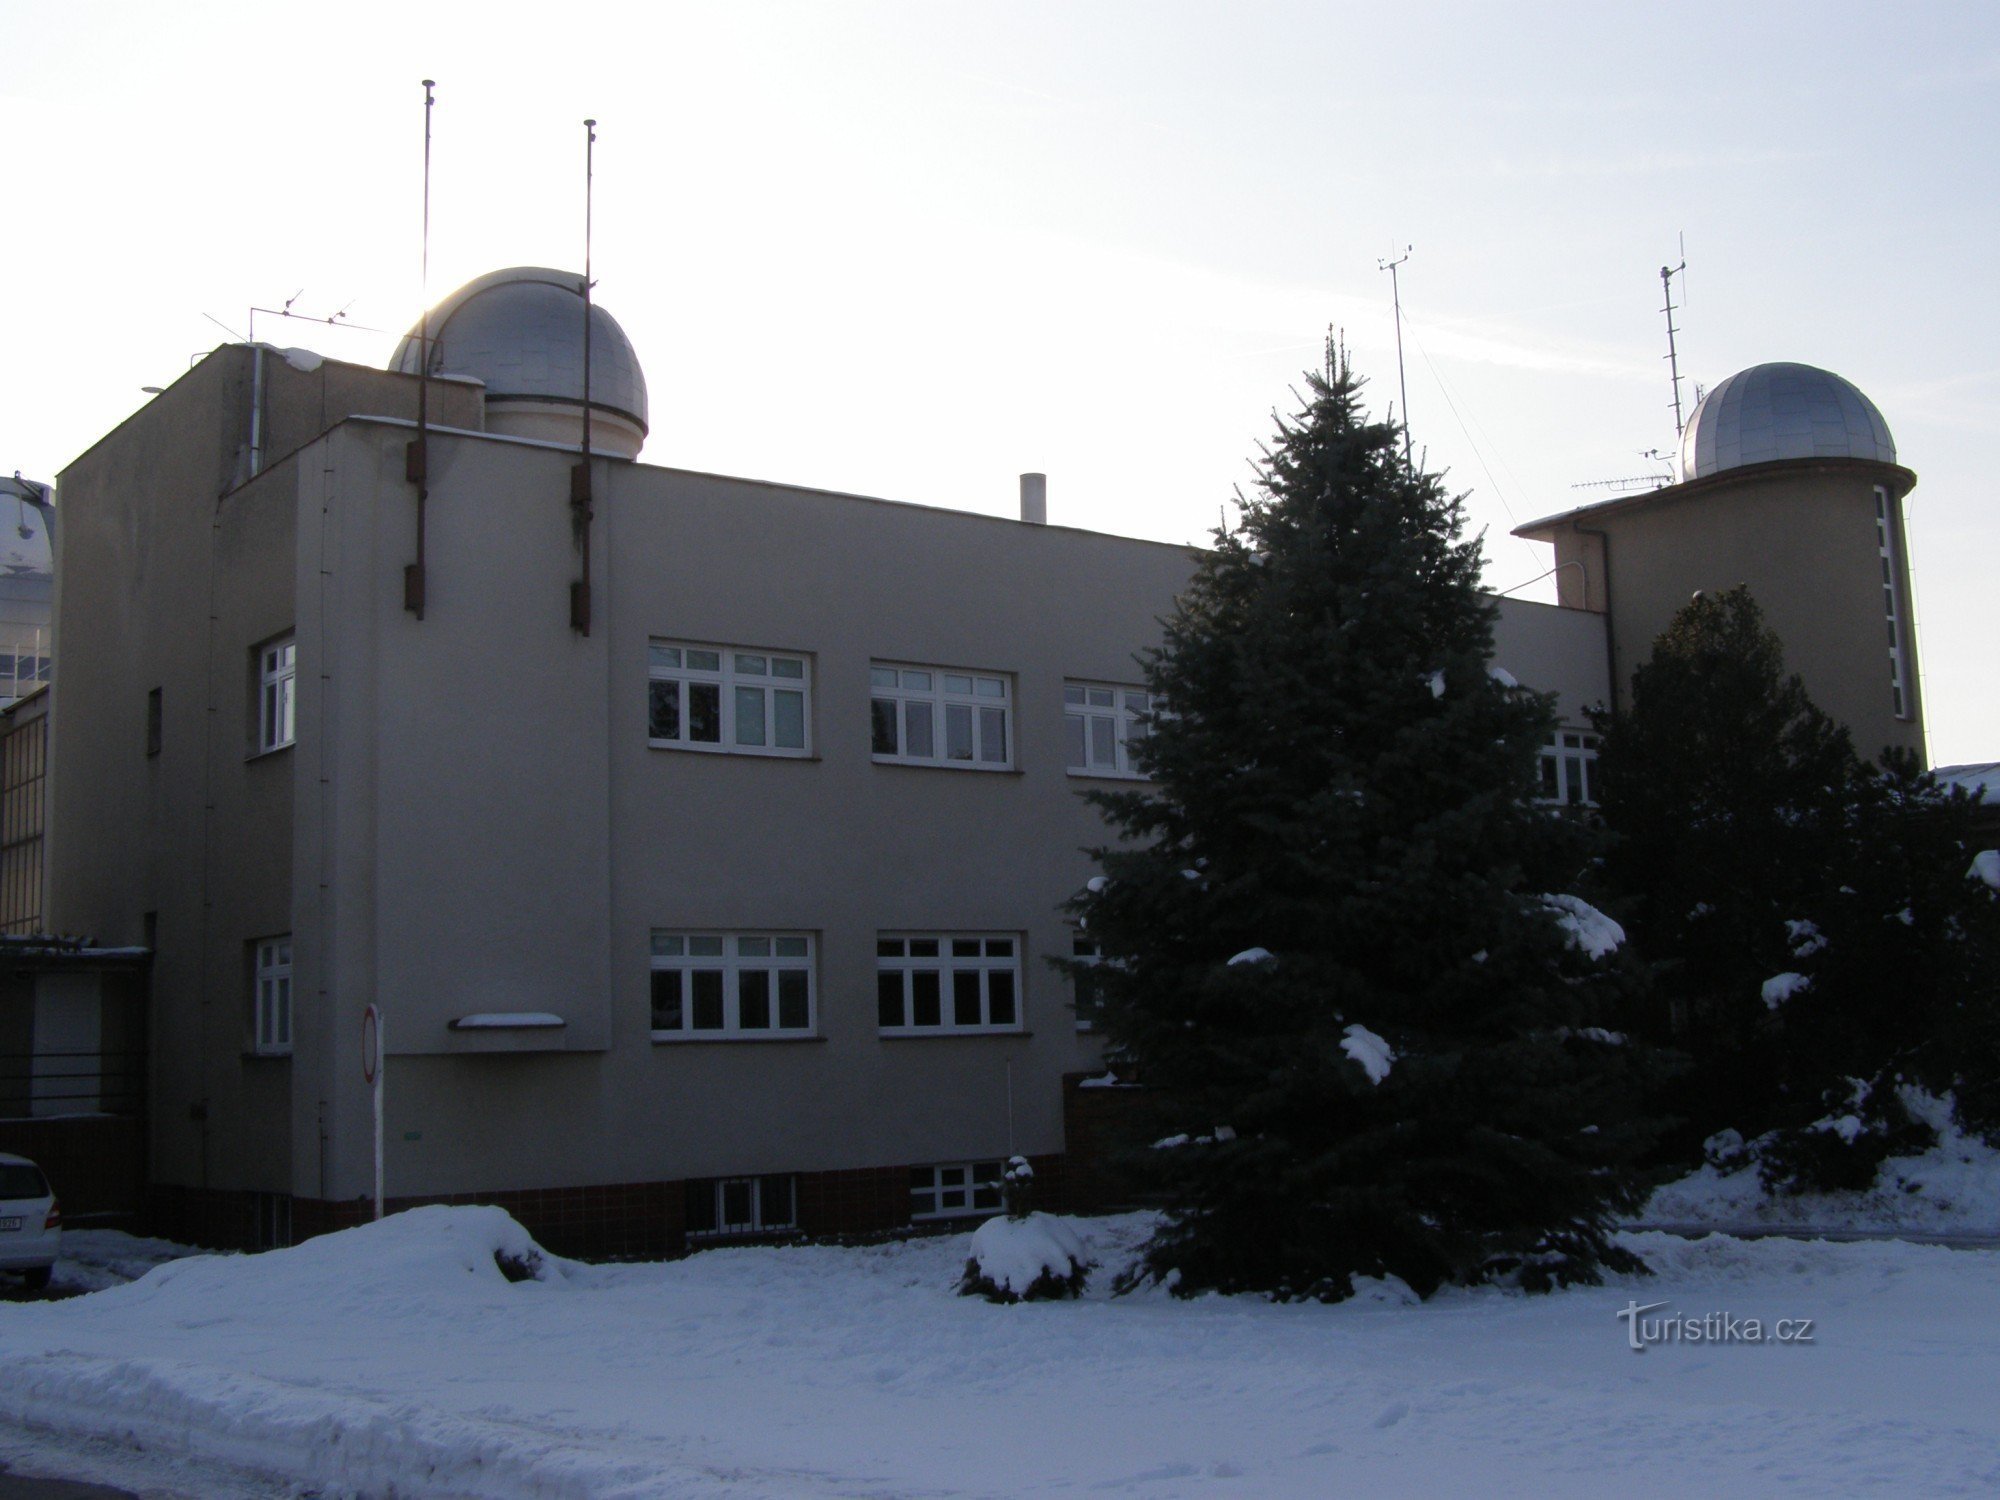 Hradec Králové - observatório e planetário